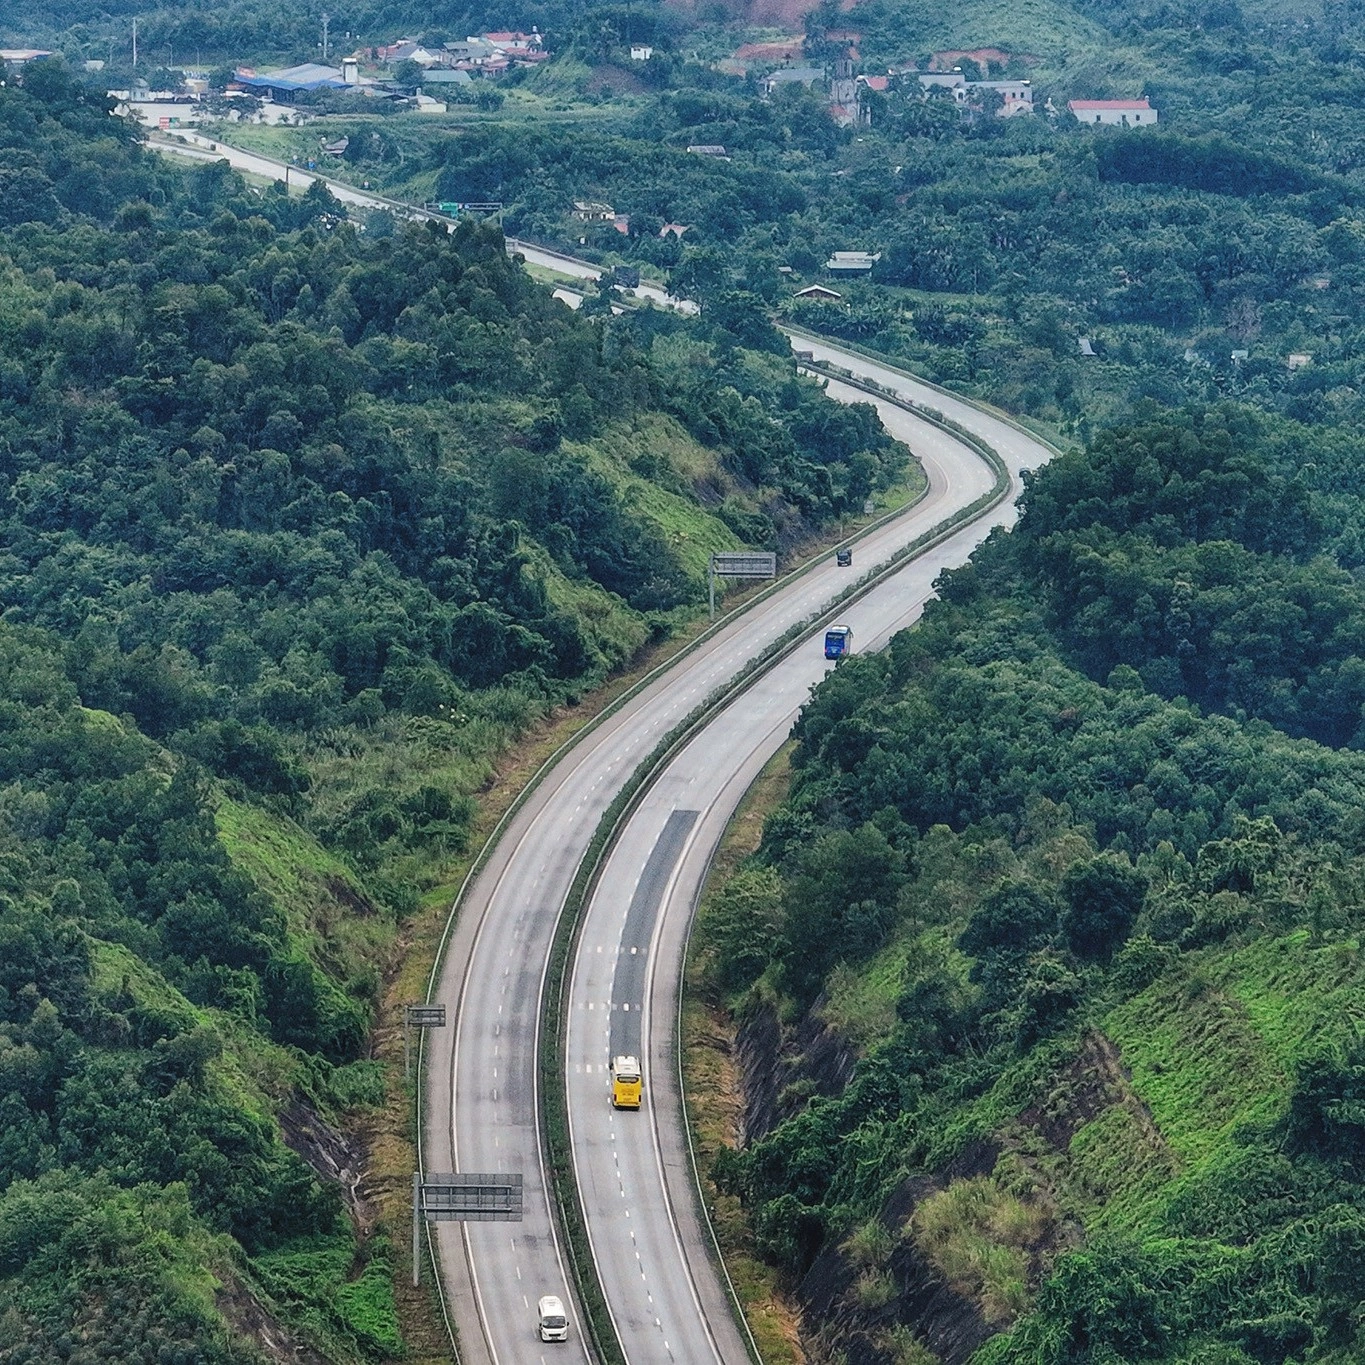 Cao tốc Nội Bài - Lào Cai với chiều dài 264km